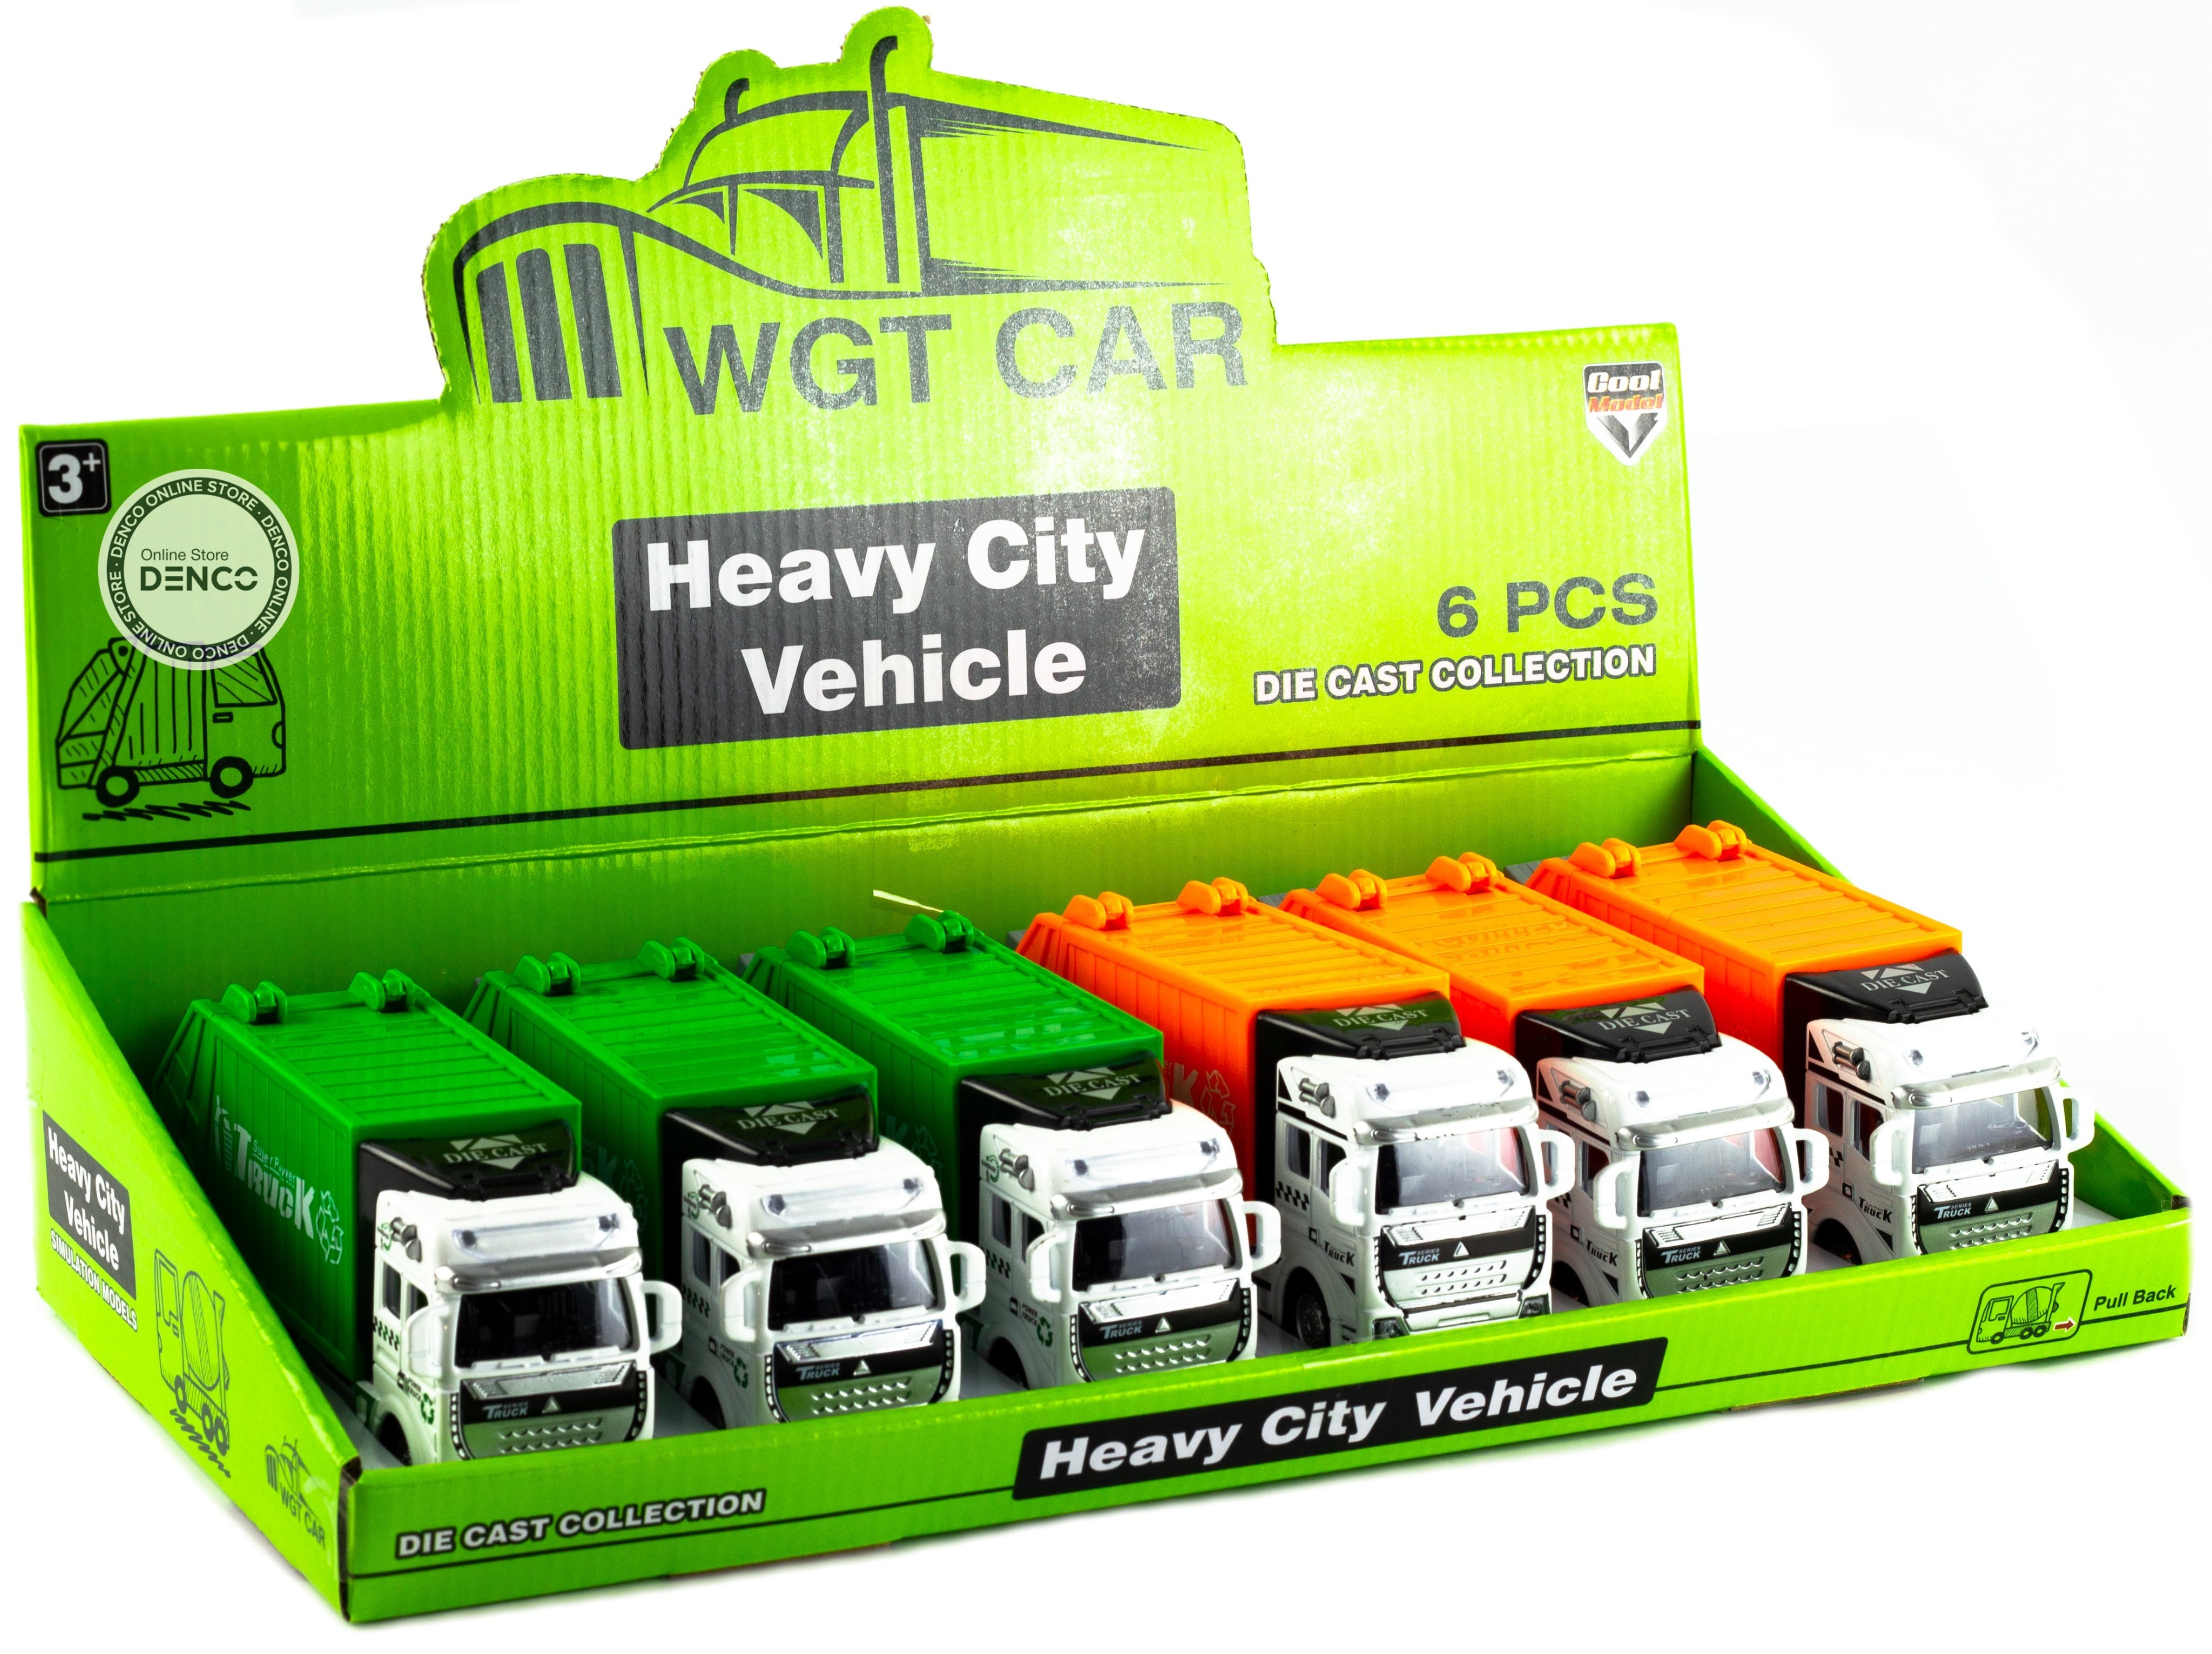 Металлическая машинка WGT Car «Мусоровоз» 2211-2, Heavy City Vehicle инерционный / Зеленый